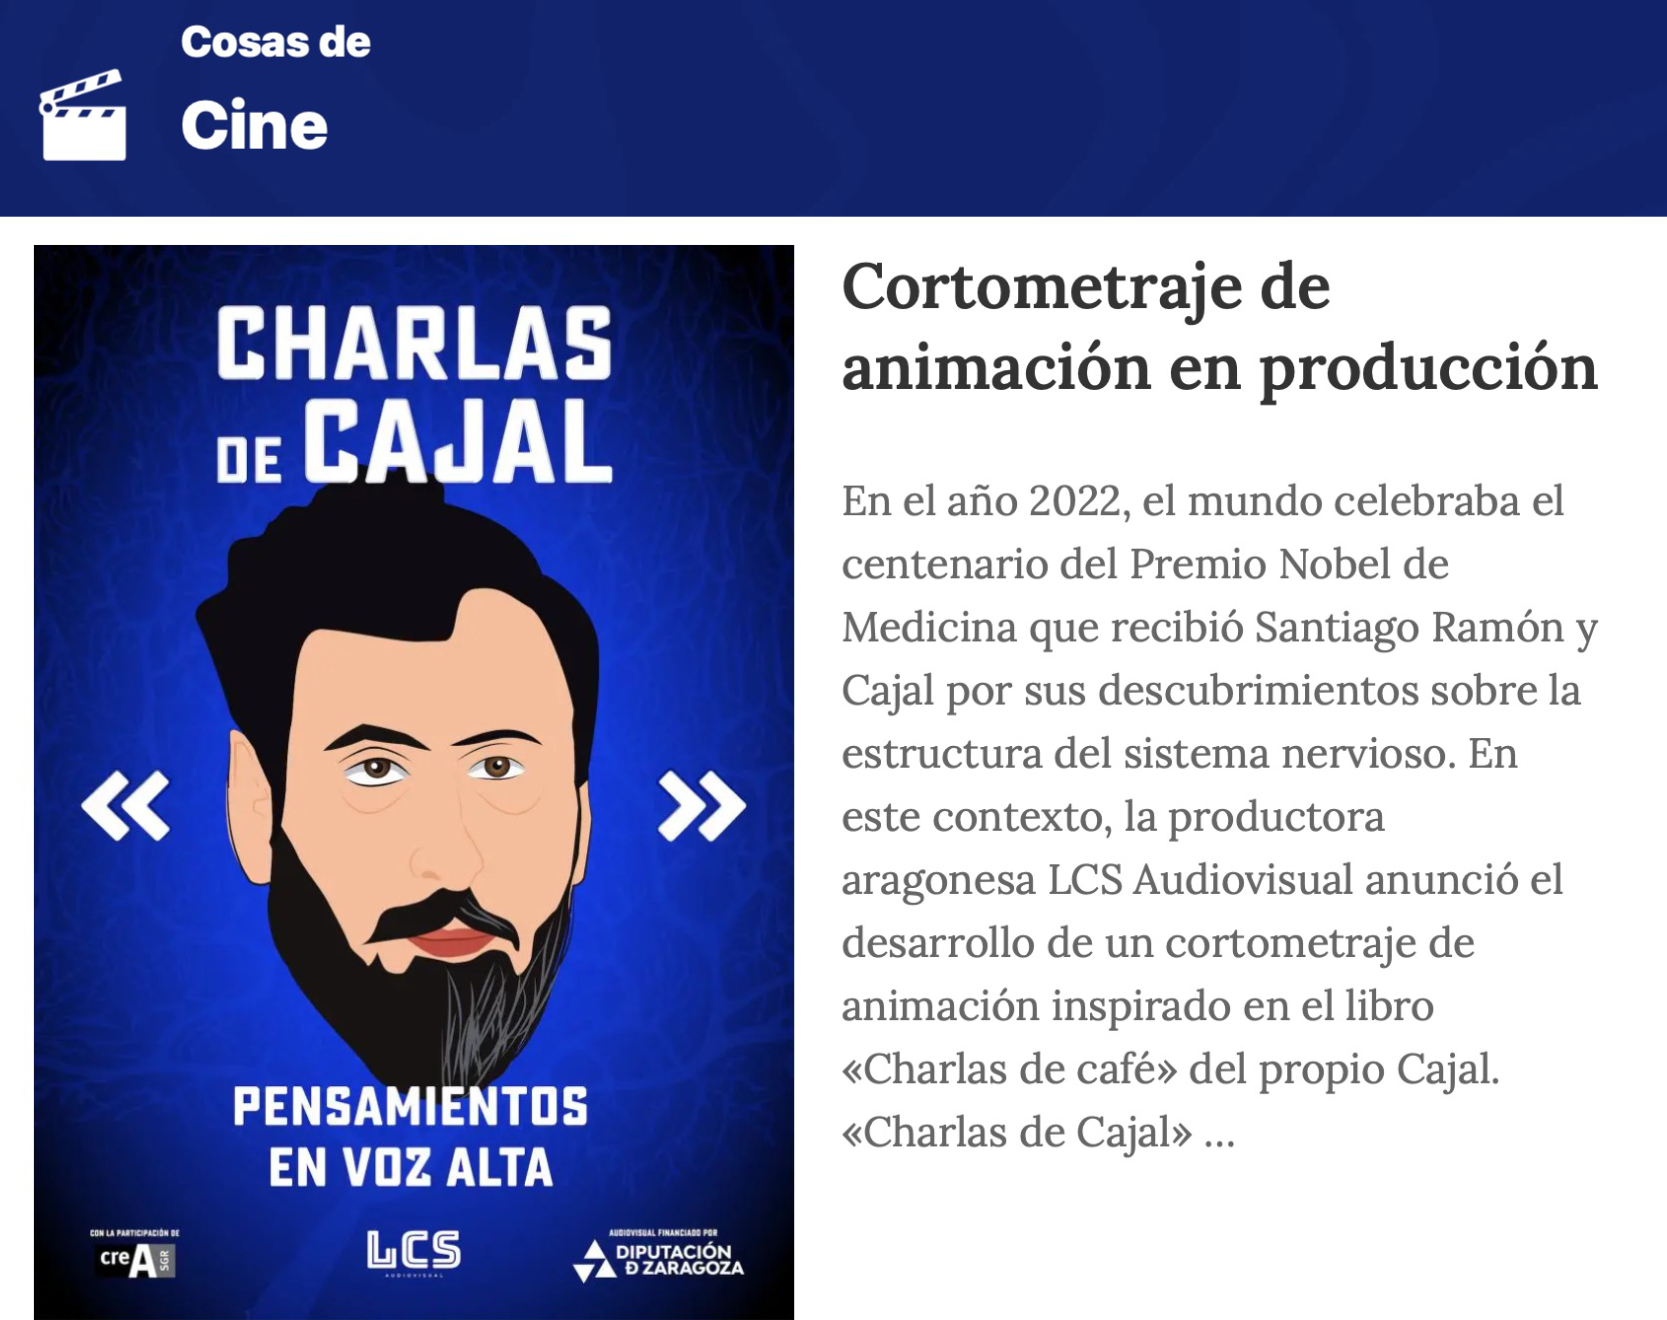 Cosas de cine: Cortometraje de Animación basado en Charlas de Café de Santiago Ramón y Cajal